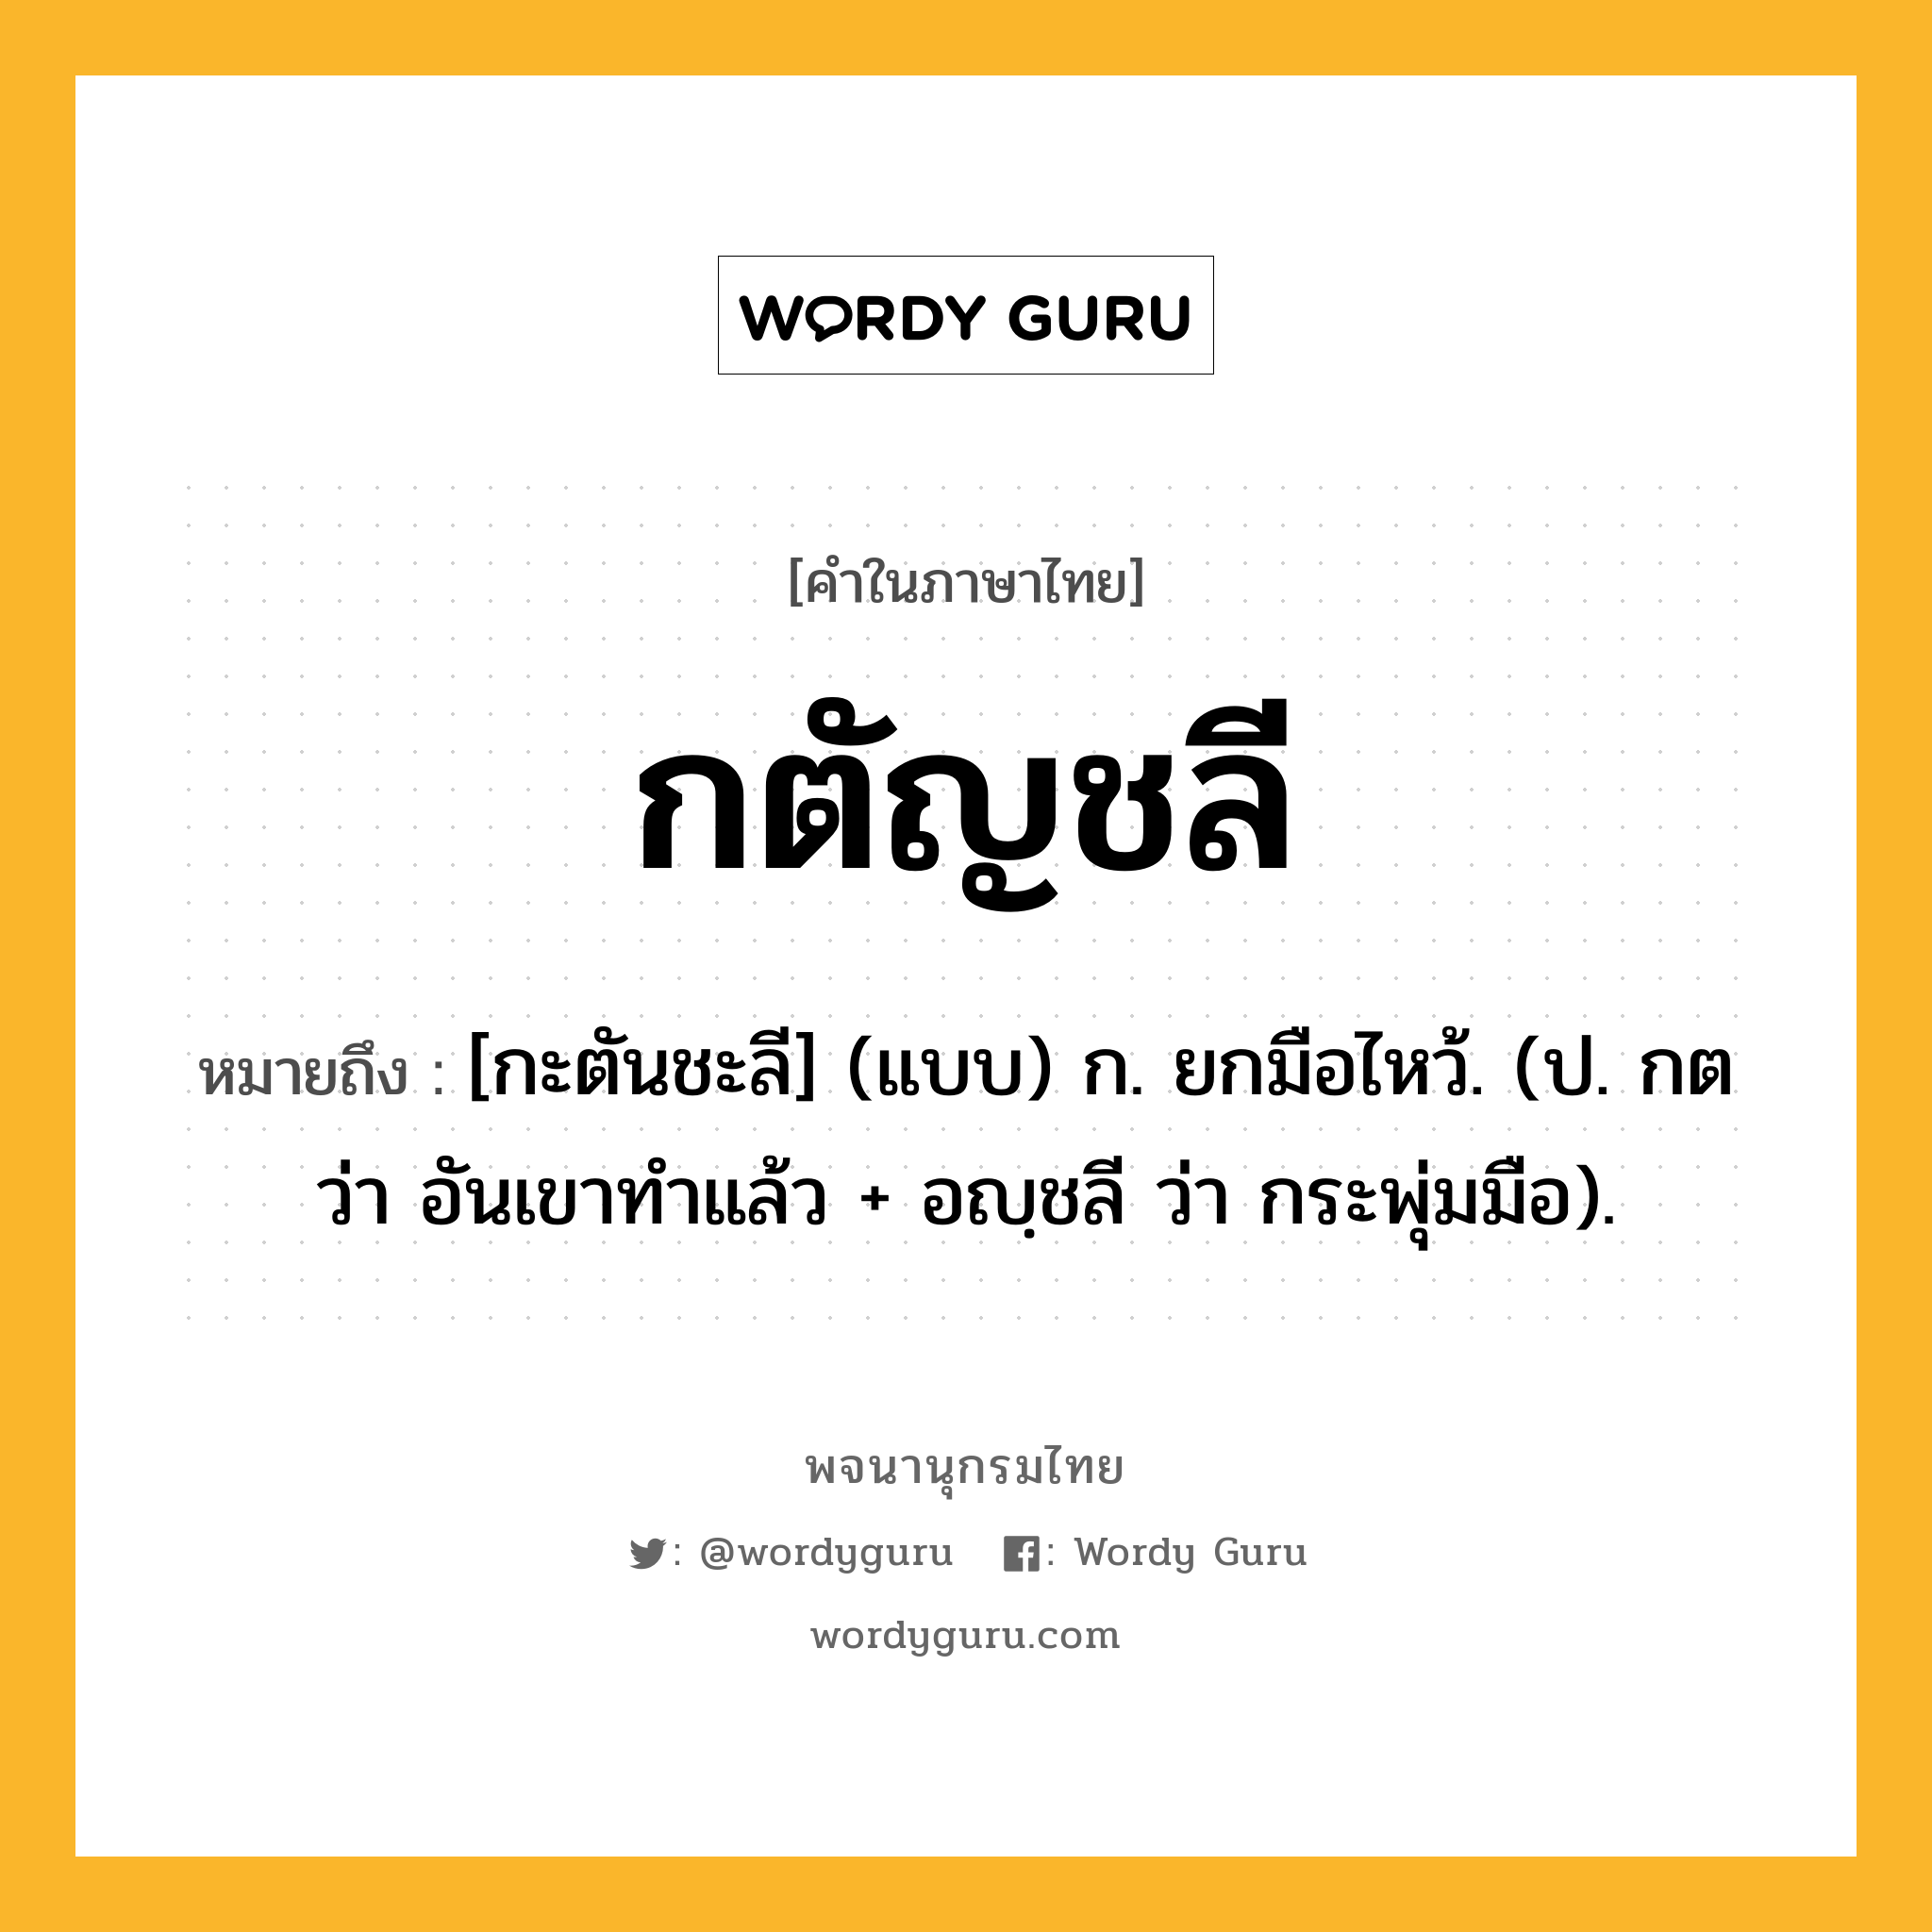 กตัญชลี ความหมาย หมายถึงอะไร?, คำในภาษาไทย กตัญชลี หมายถึง [กะตันชะลี] (แบบ) ก. ยกมือไหว้. (ป. กต ว่า อันเขาทําแล้ว + อญฺชลี ว่า กระพุ่มมือ).